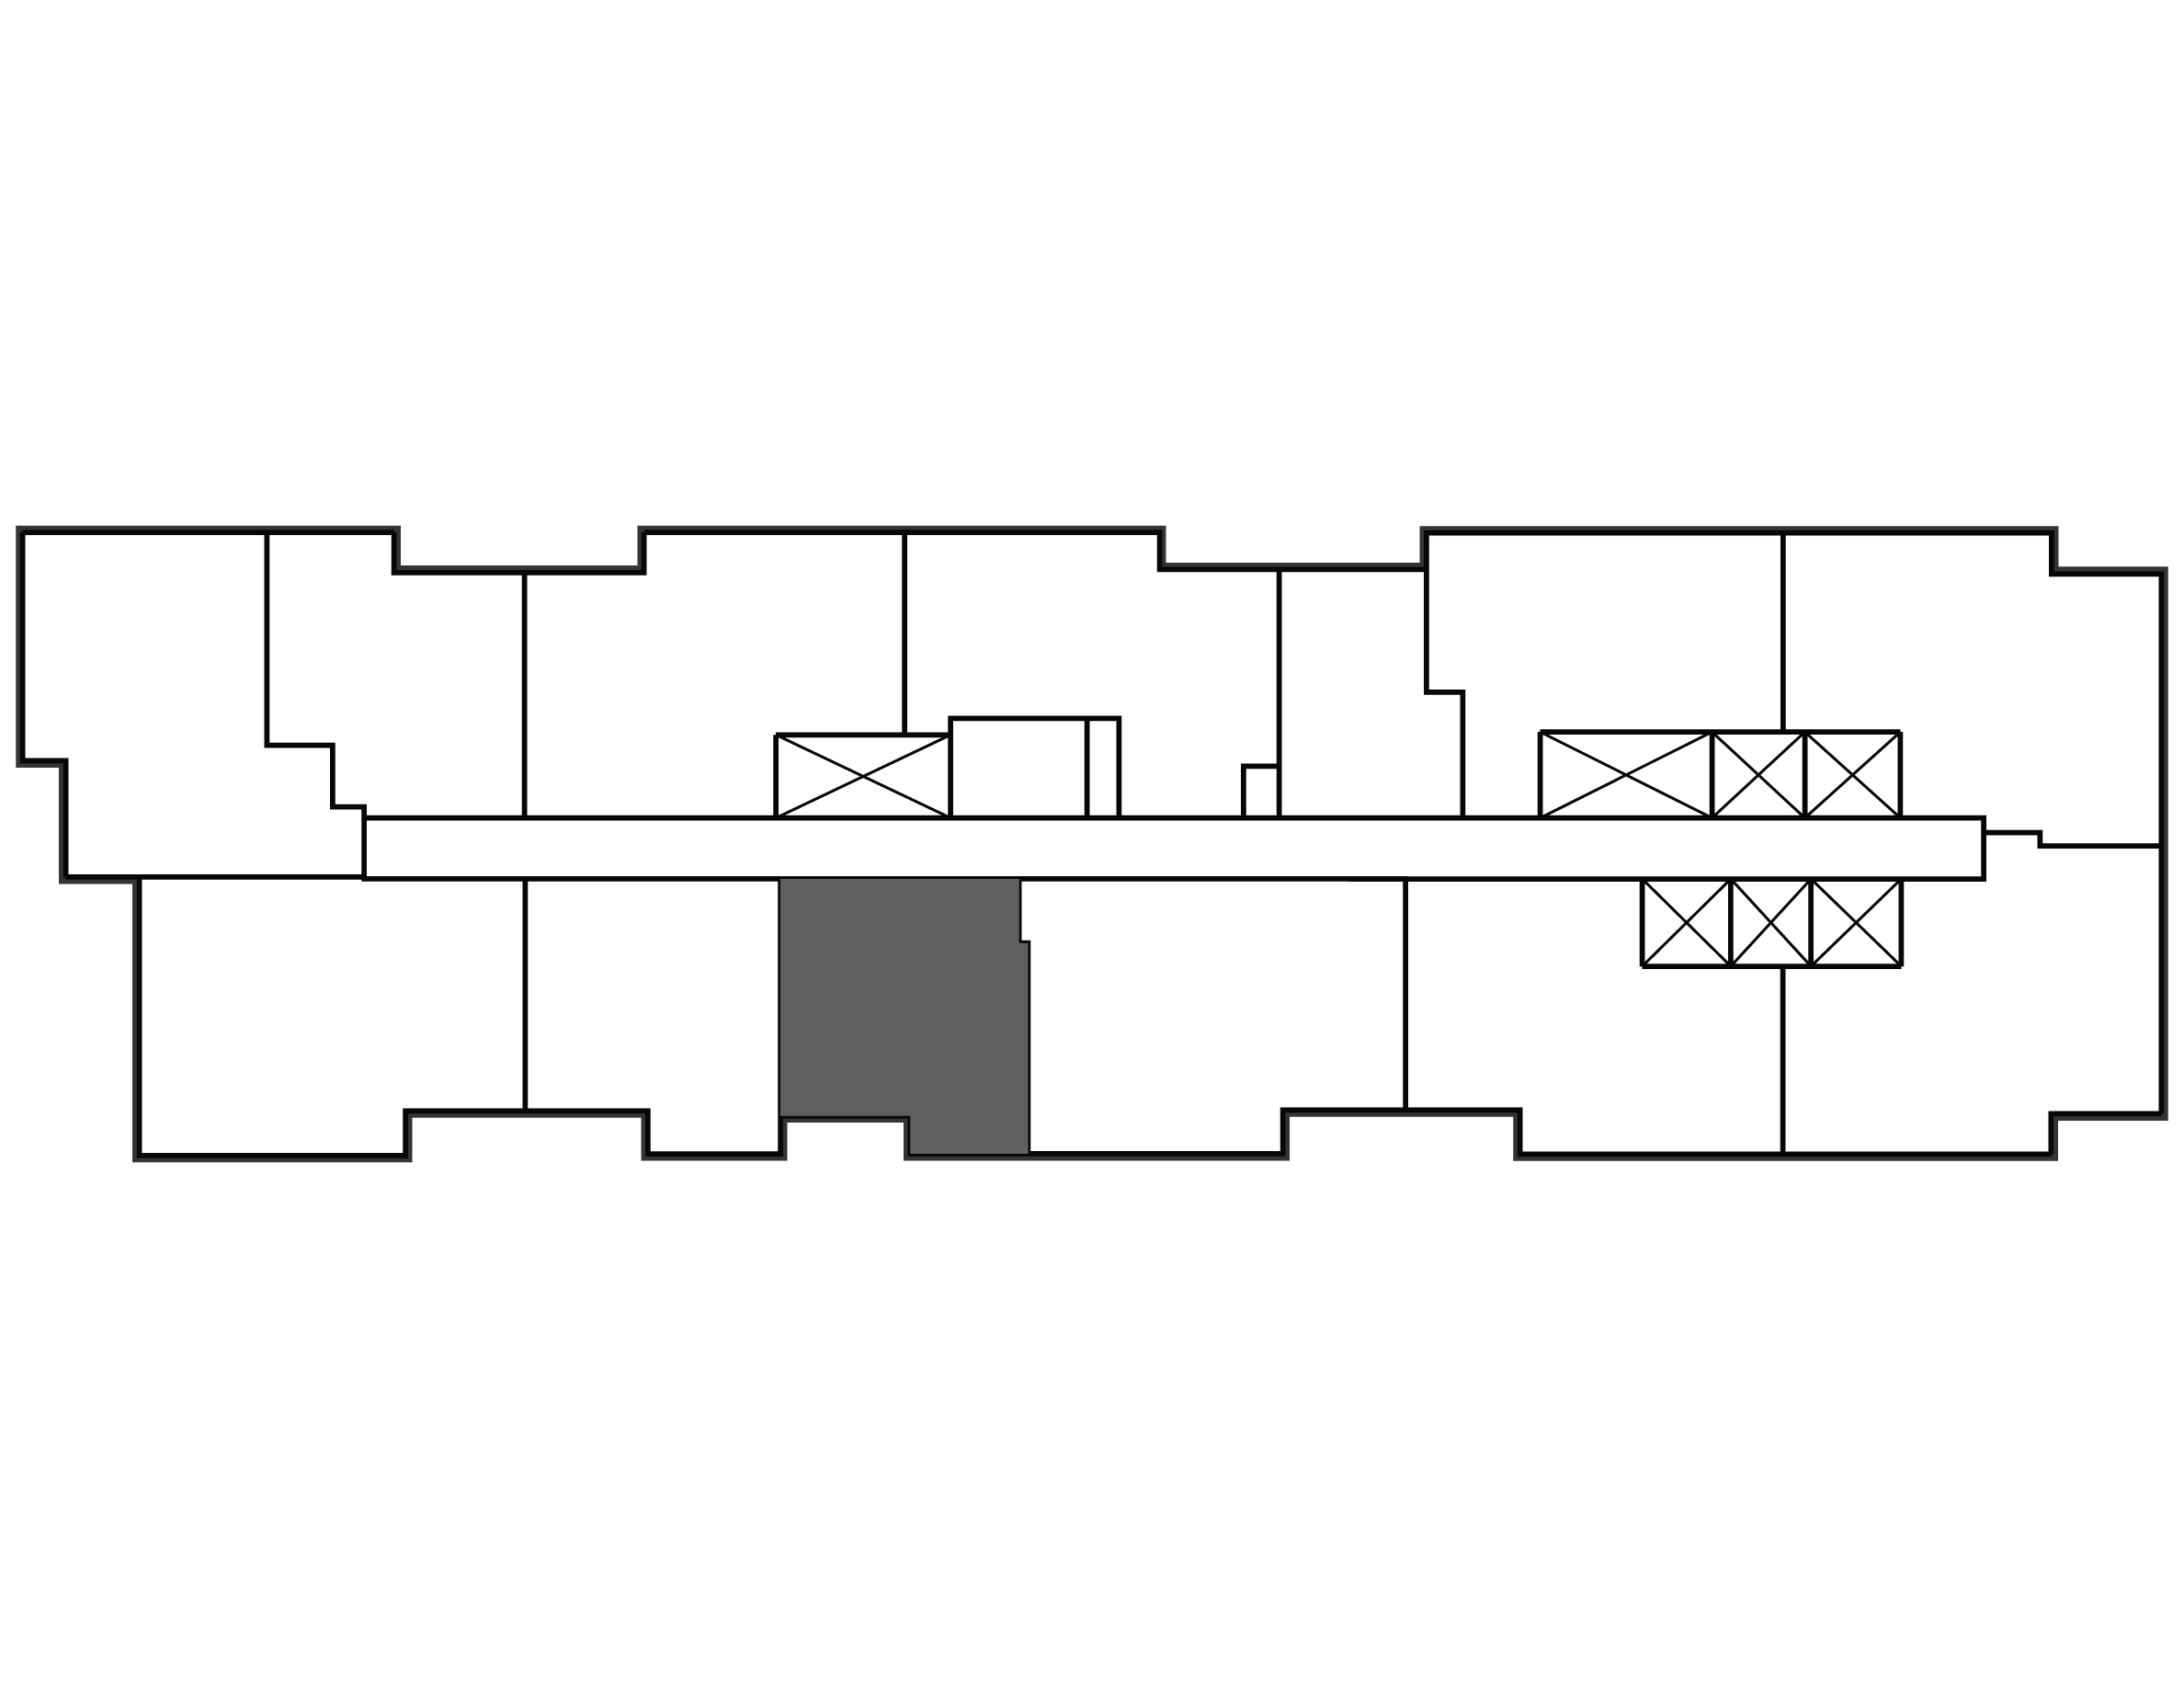 Key plan image of apartment 2604